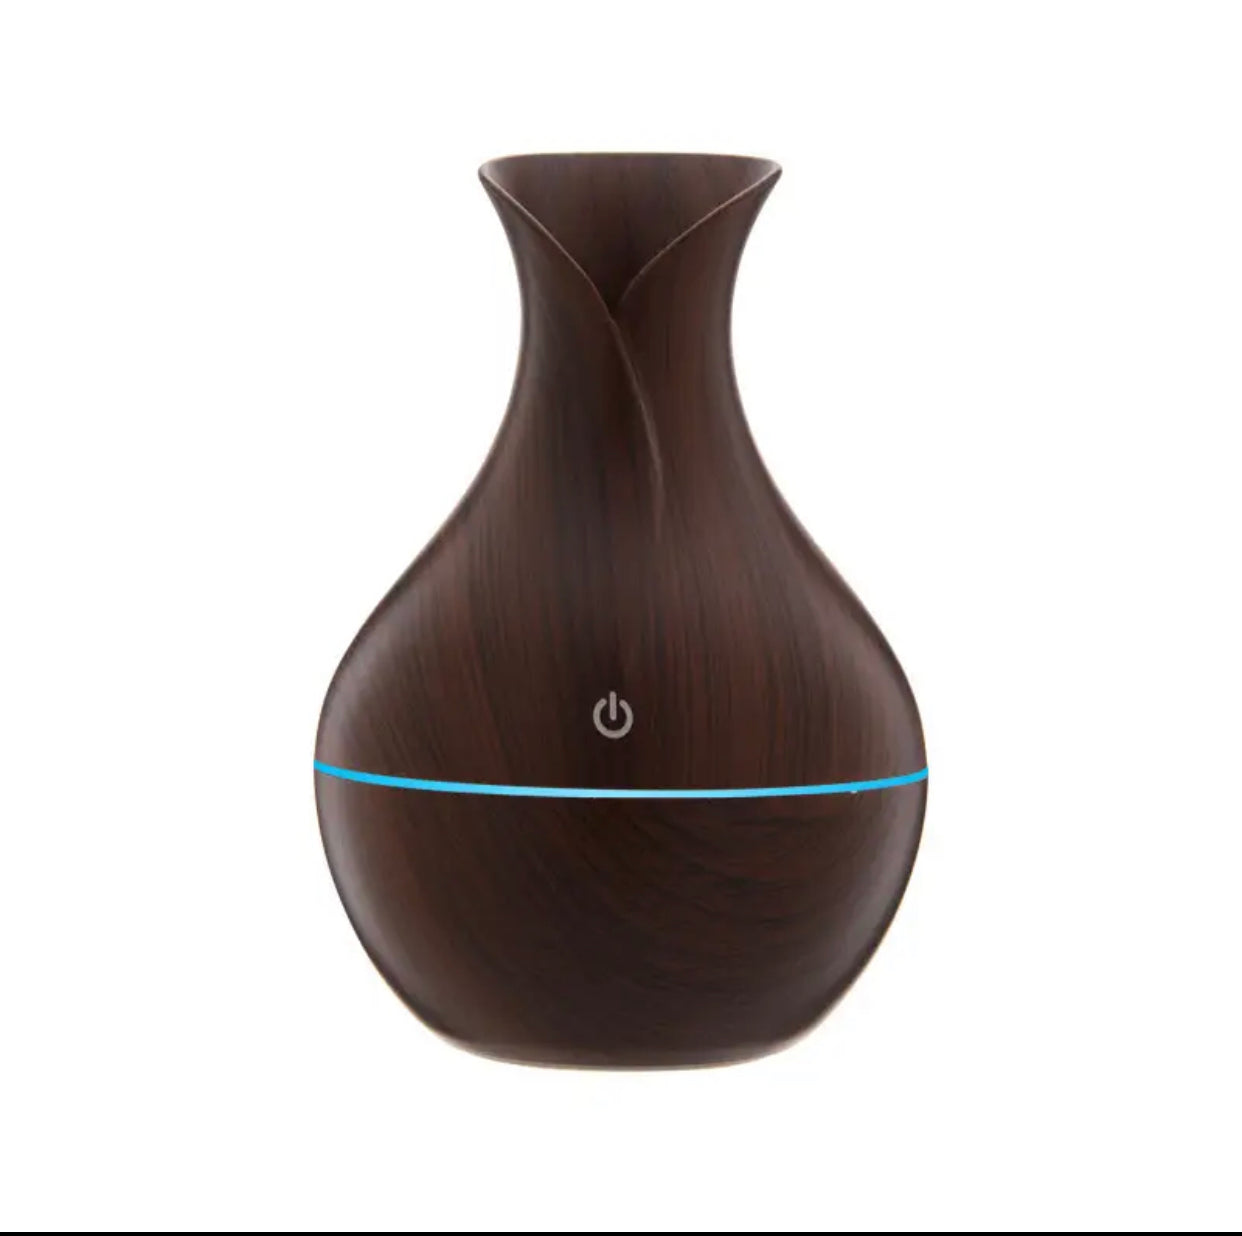 Vase en grain de bois - diffuseur - humidificateur : le naturel rencontre la technologie moderne